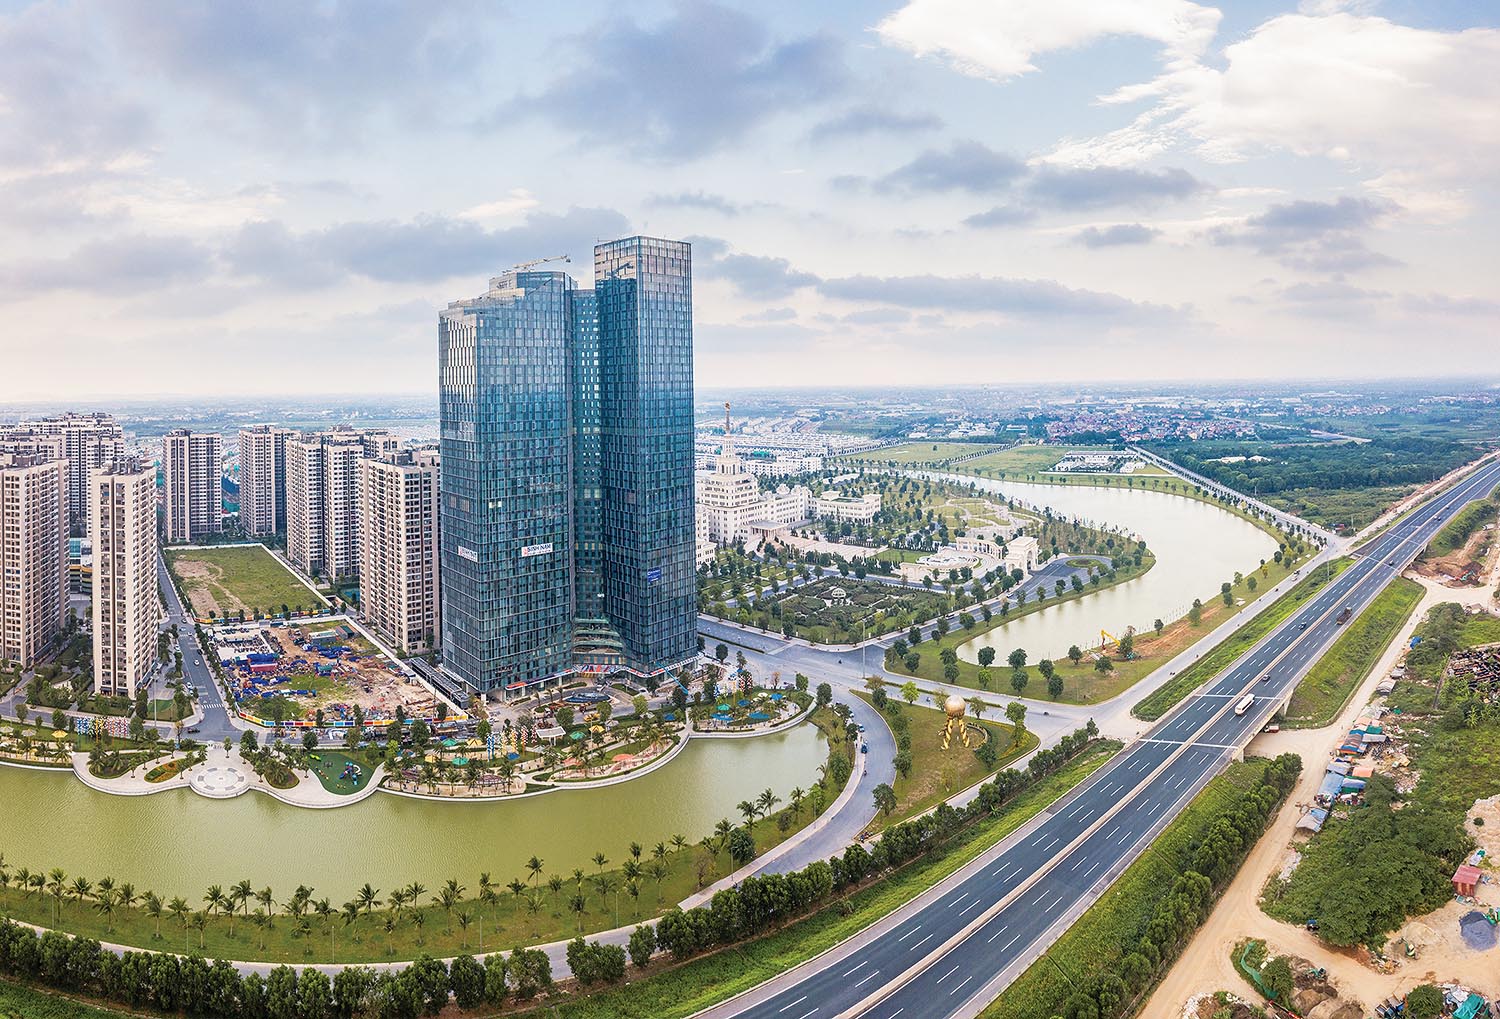 Hầu hết các tòa nhà văn phòng tại Hà Nội đang duy trì tỷ lệ lấp đầy khá cao. Trong ảnh: Dự án Vinhomes Ocean Park 